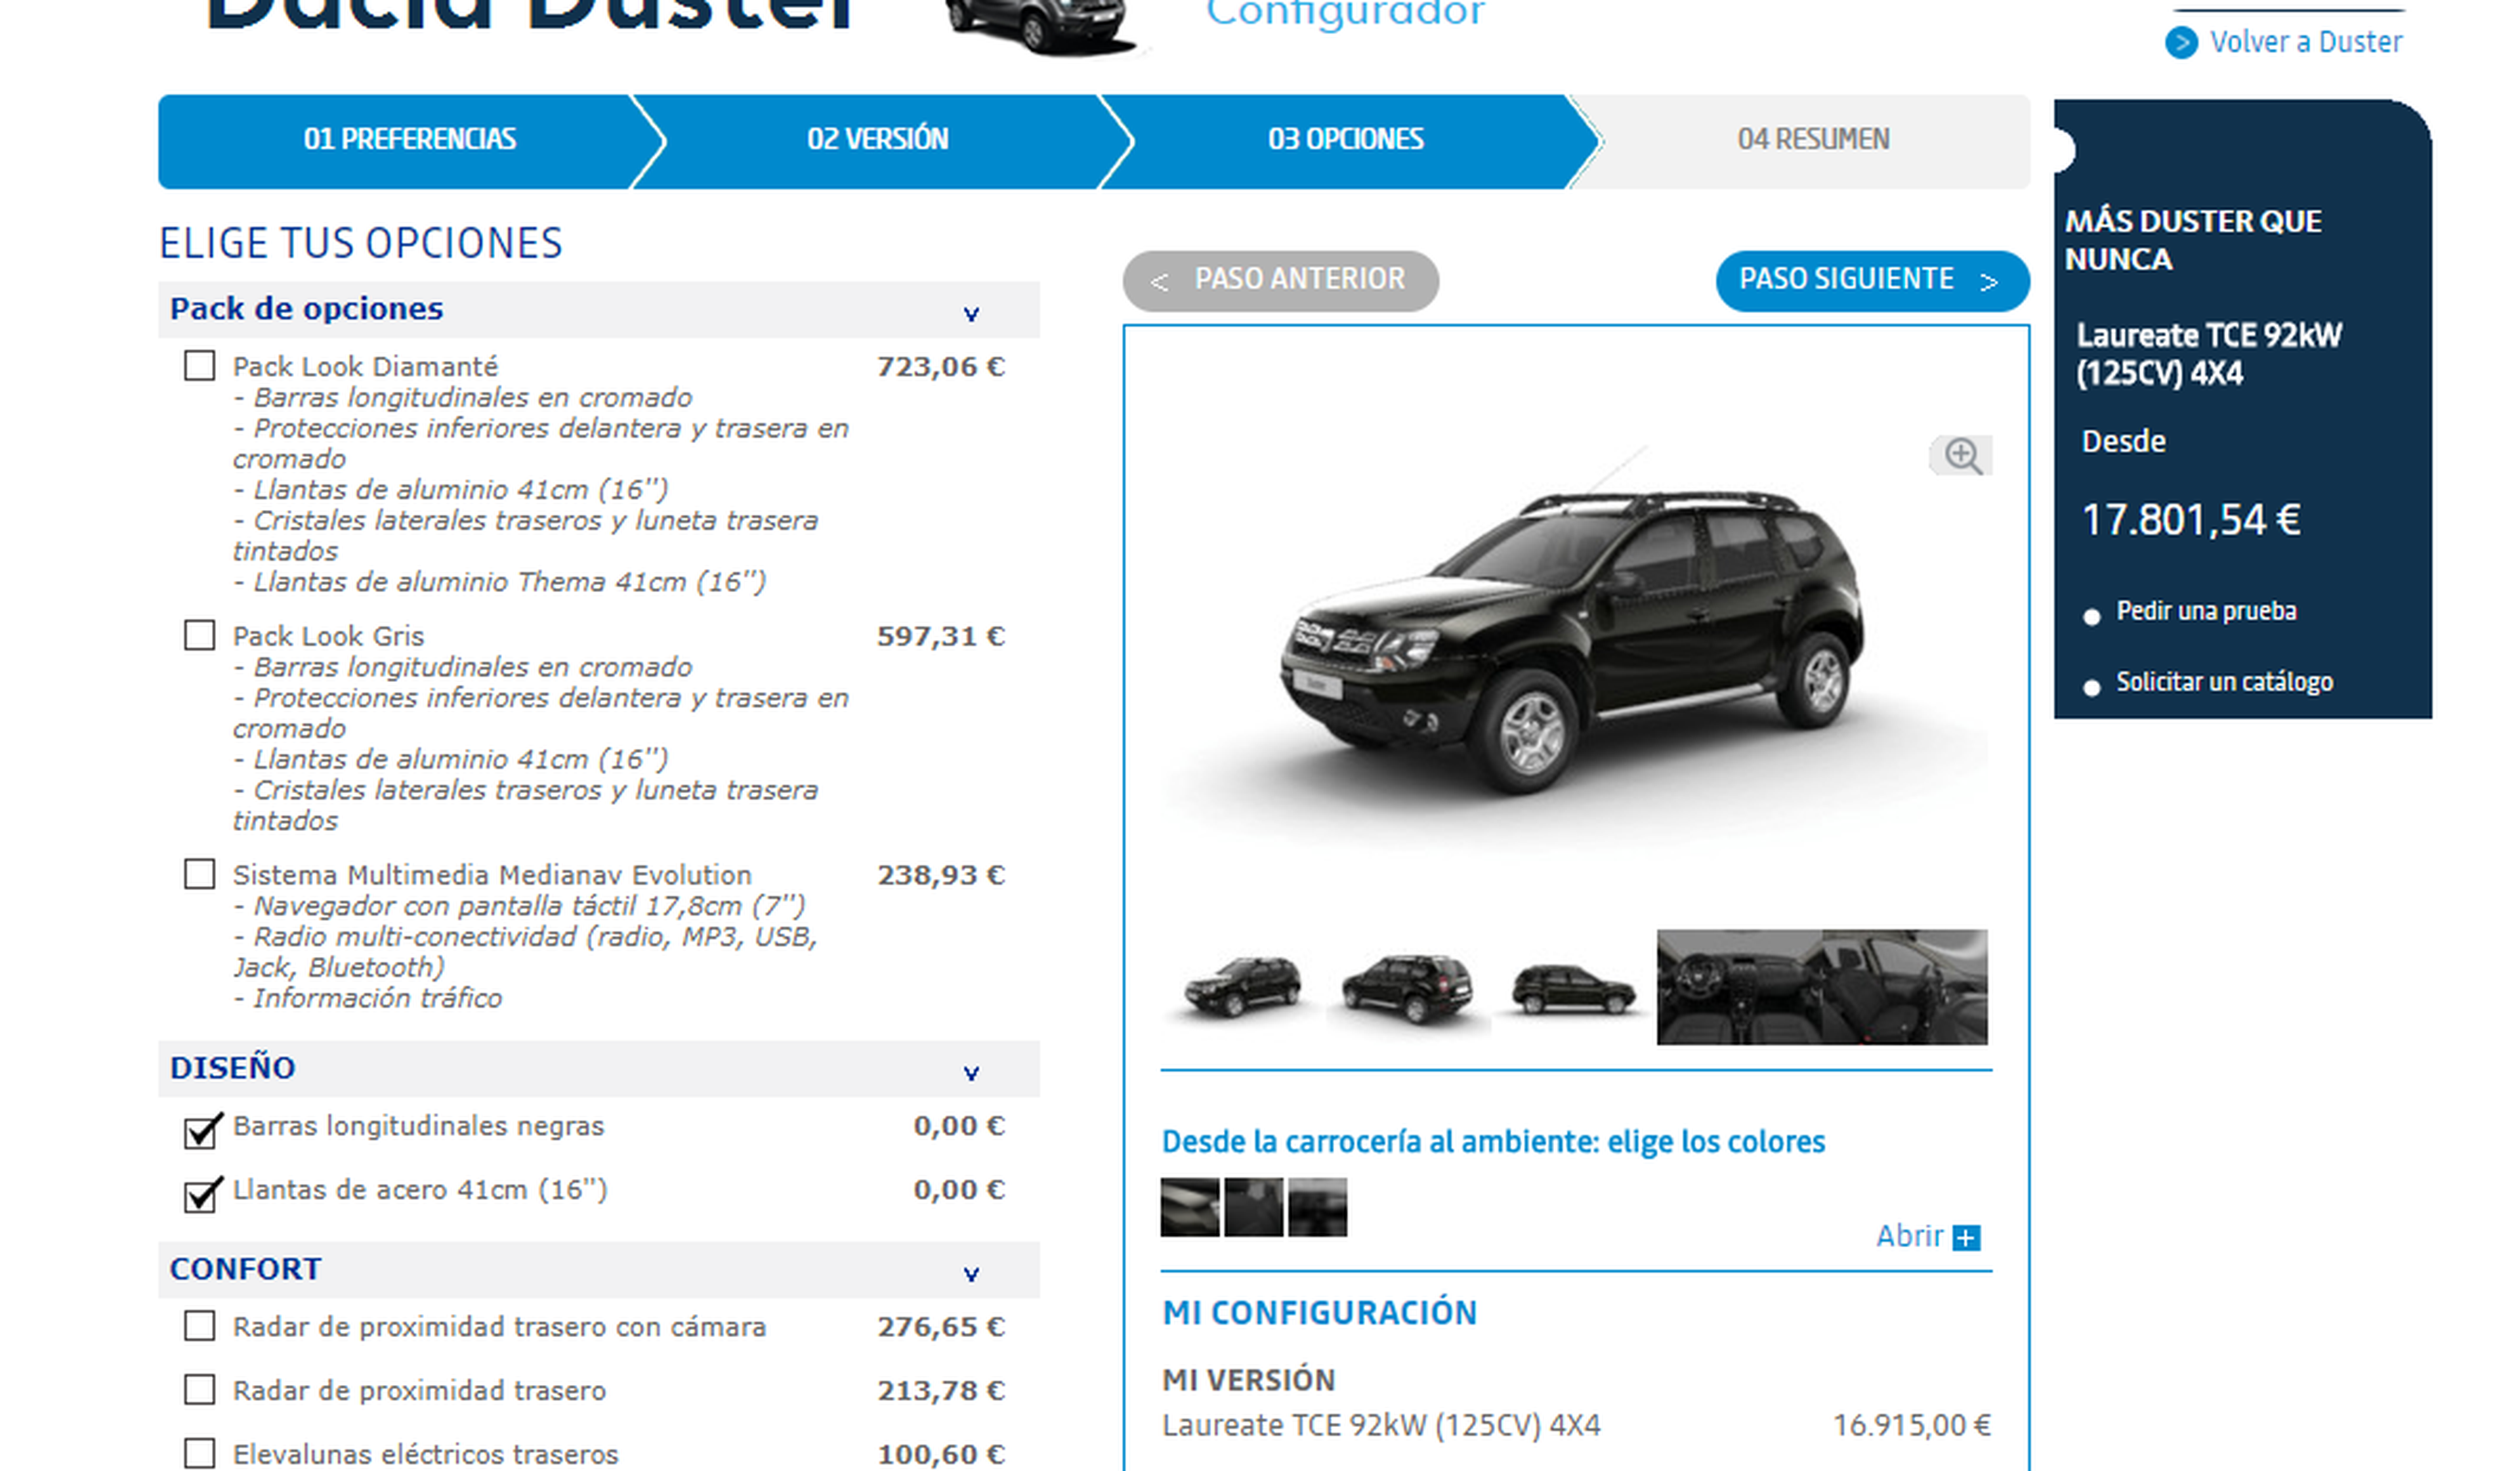 Configurador Dacia Duster